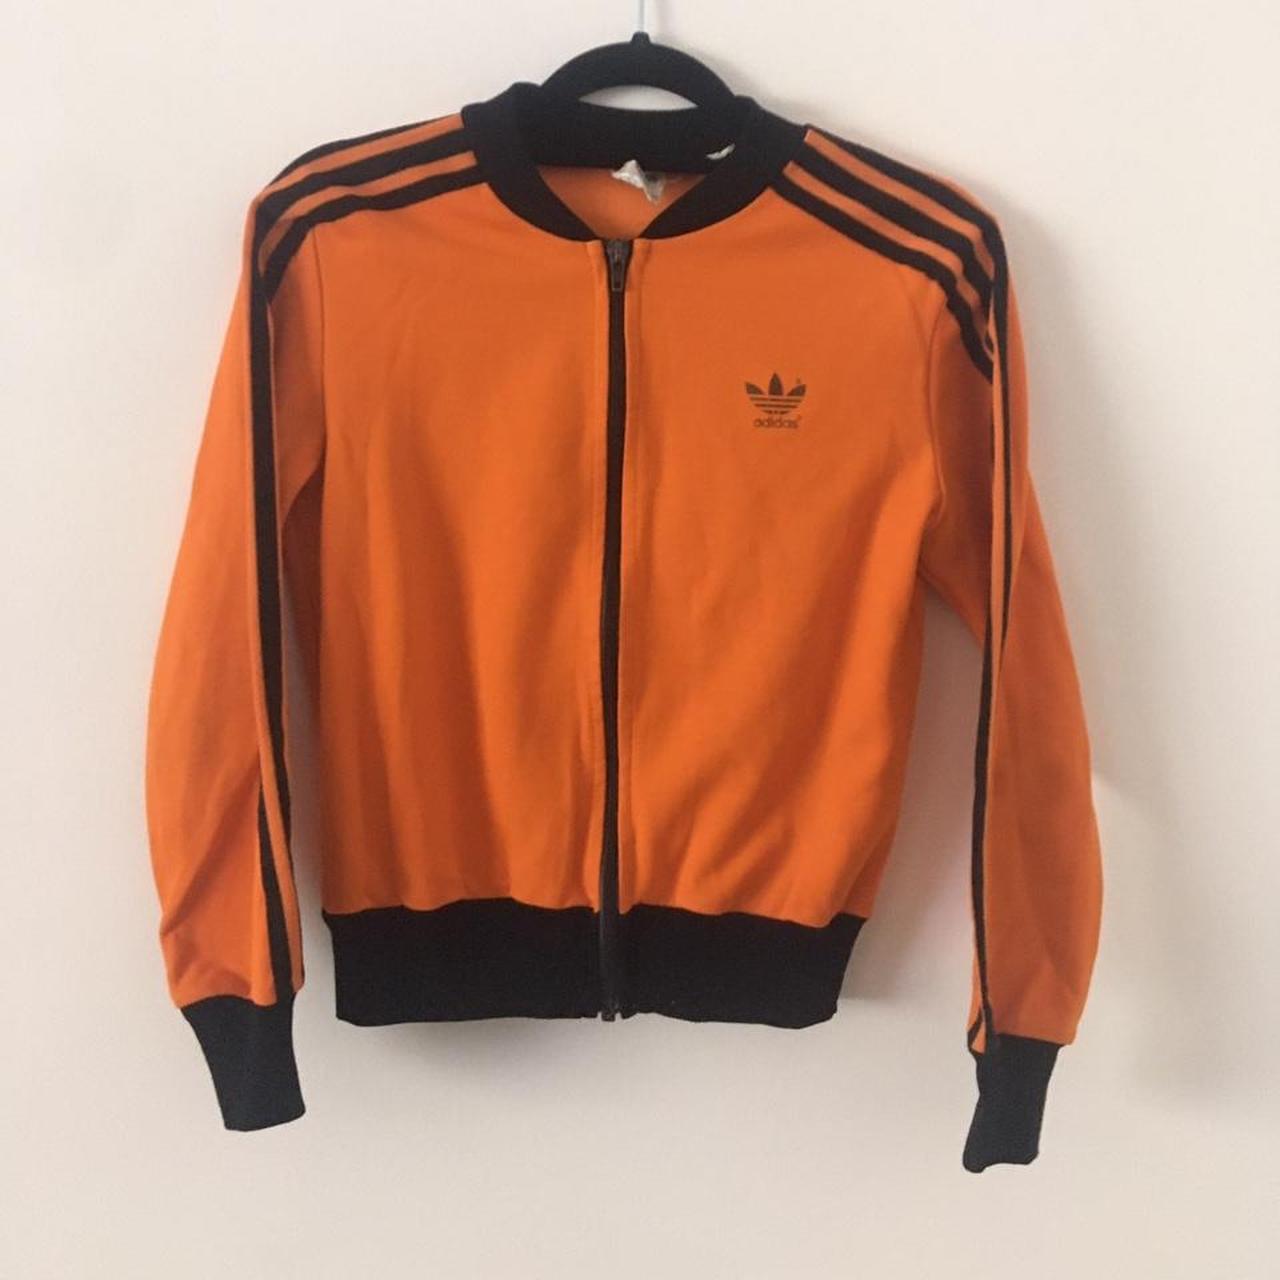 Adidas Vintage Track Jacket Orange/Black 80s Kids